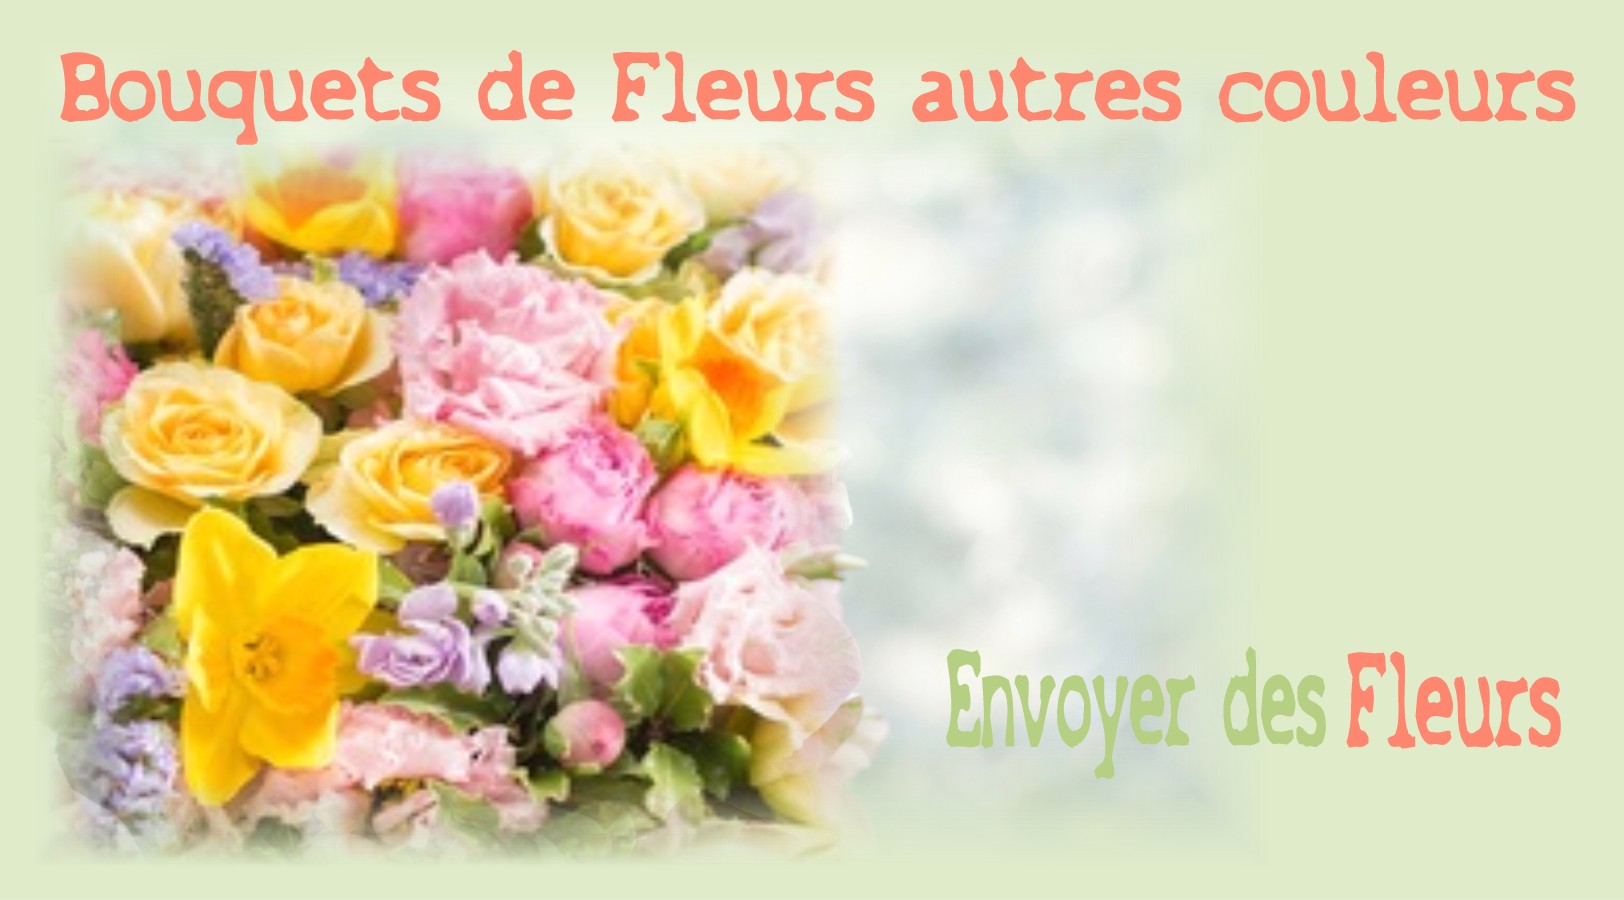 BOUQUETS DE FLEURS AUTRES COULEURS - FLEURISTE BORDEAUX (33) - ENVOYER DES FLEURS